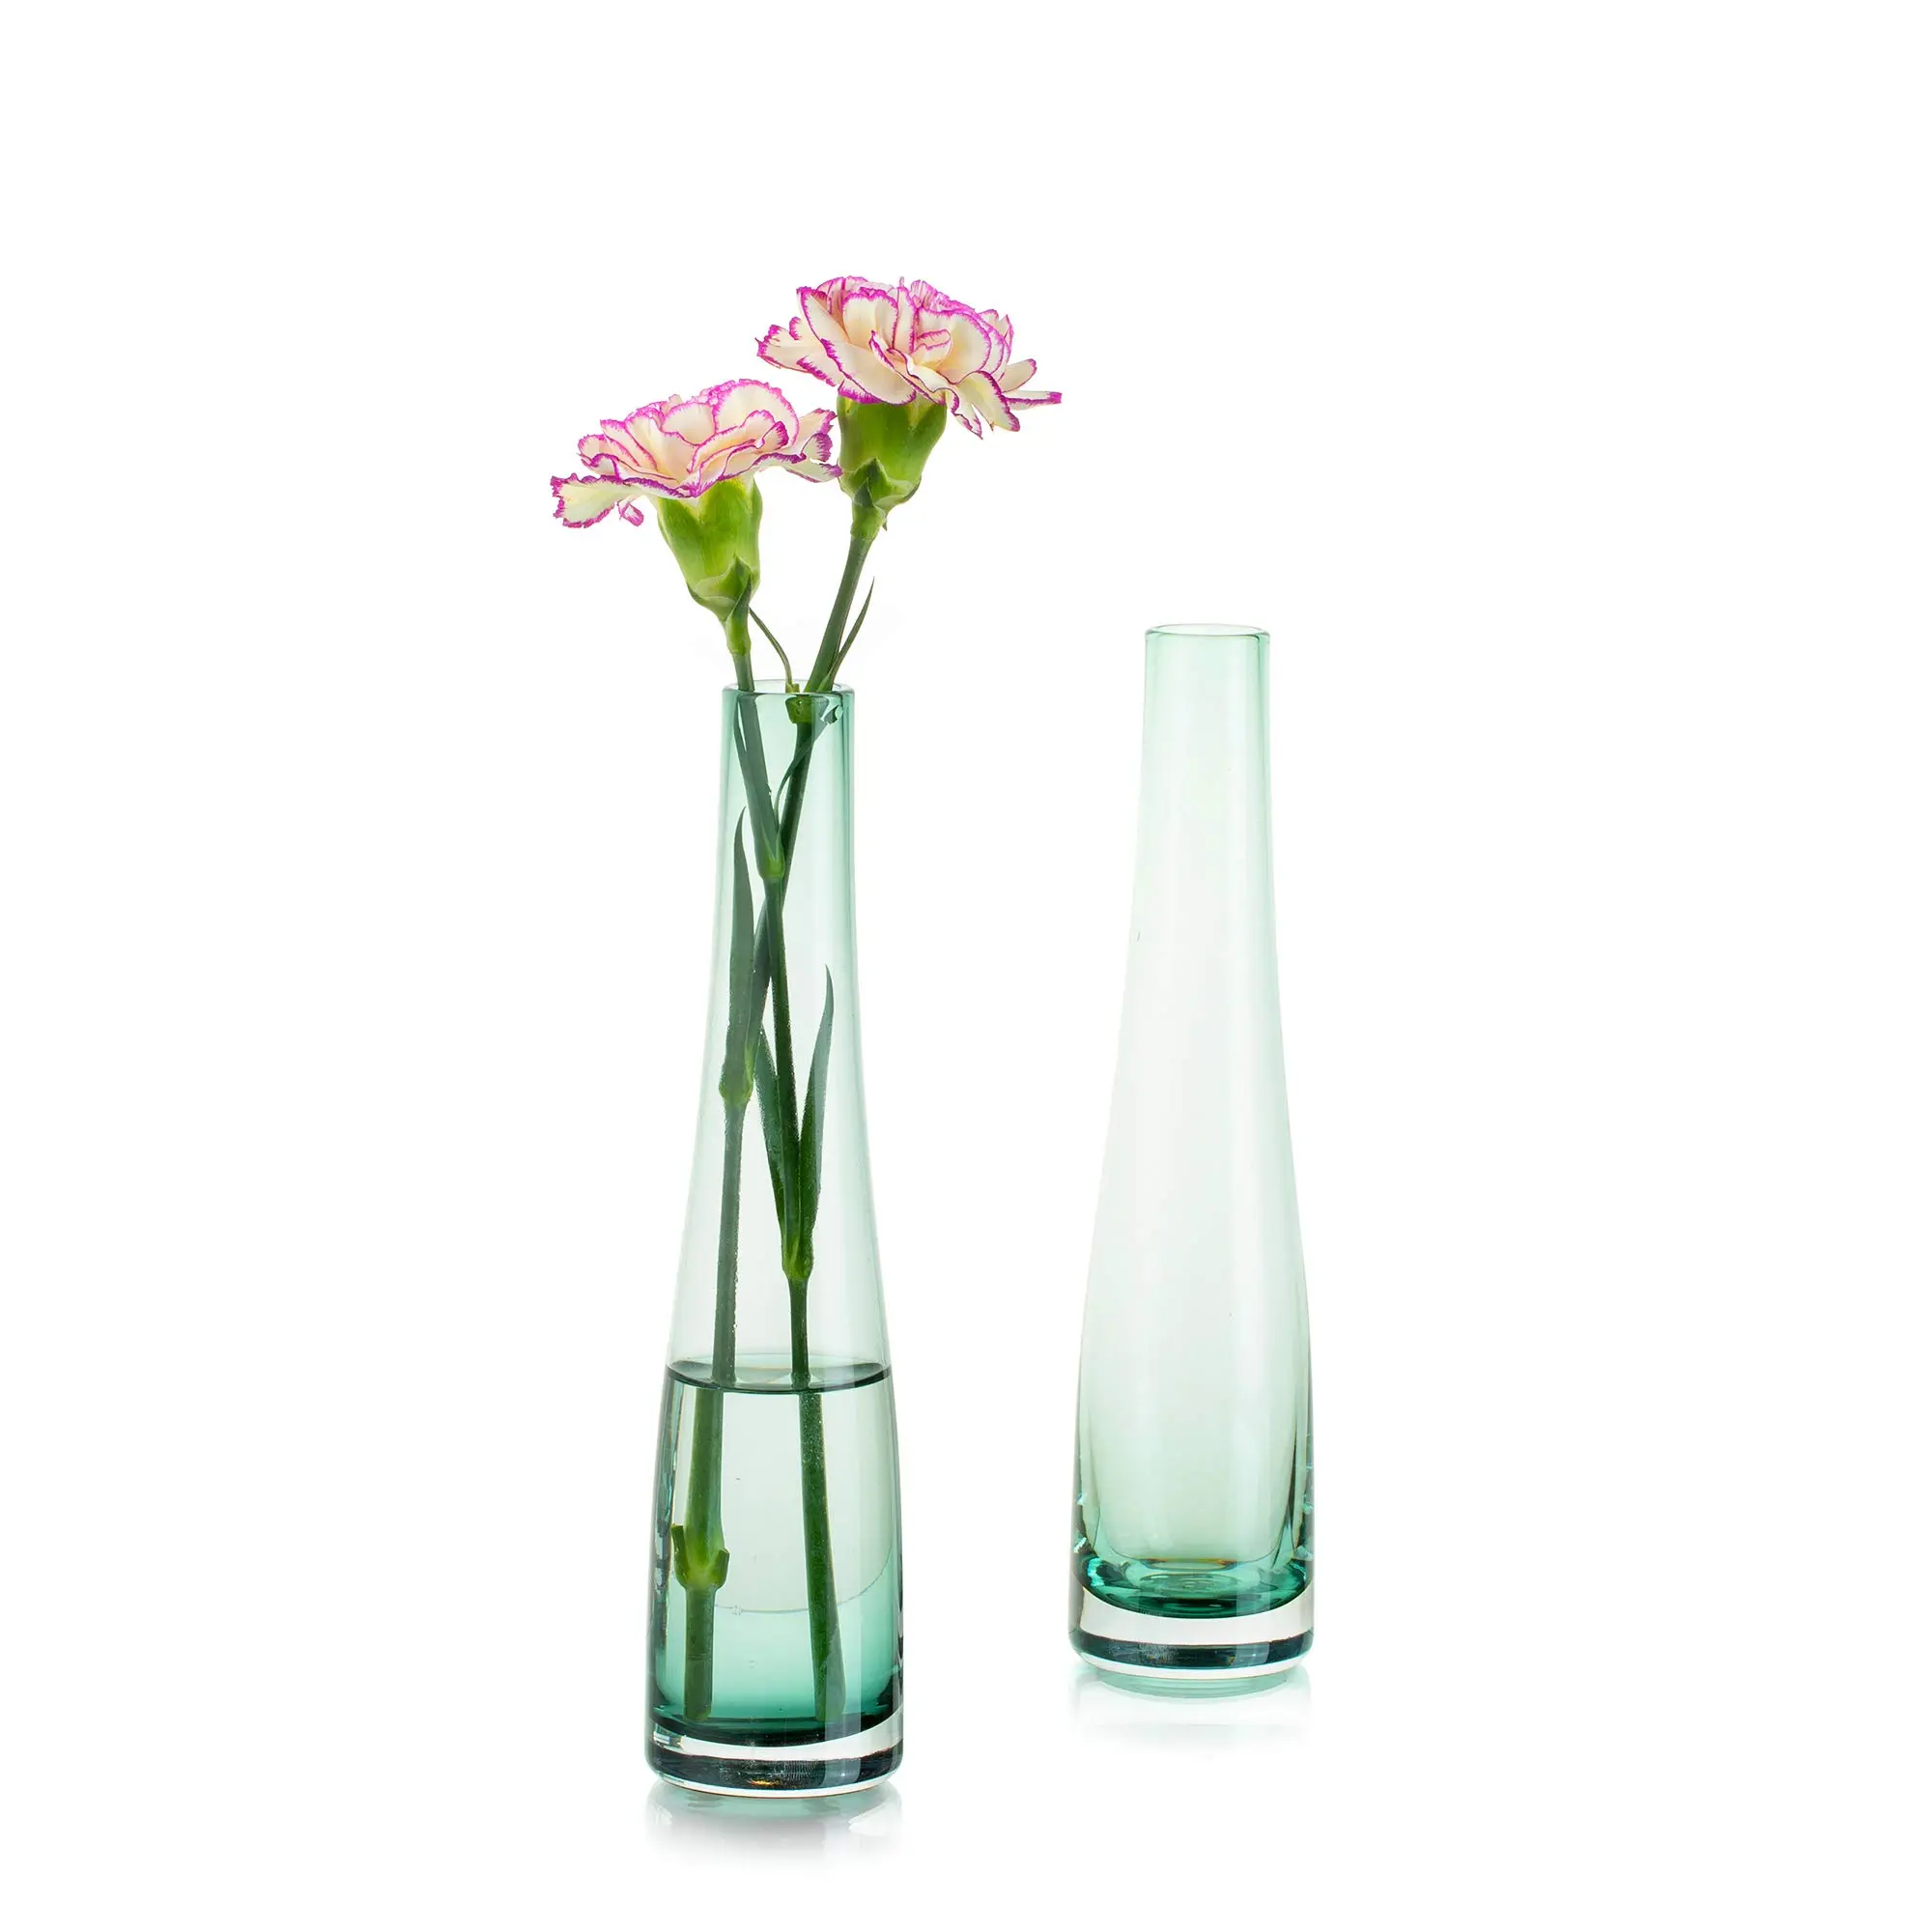 Floreros largos de vidrio: elegancia y versatilidad